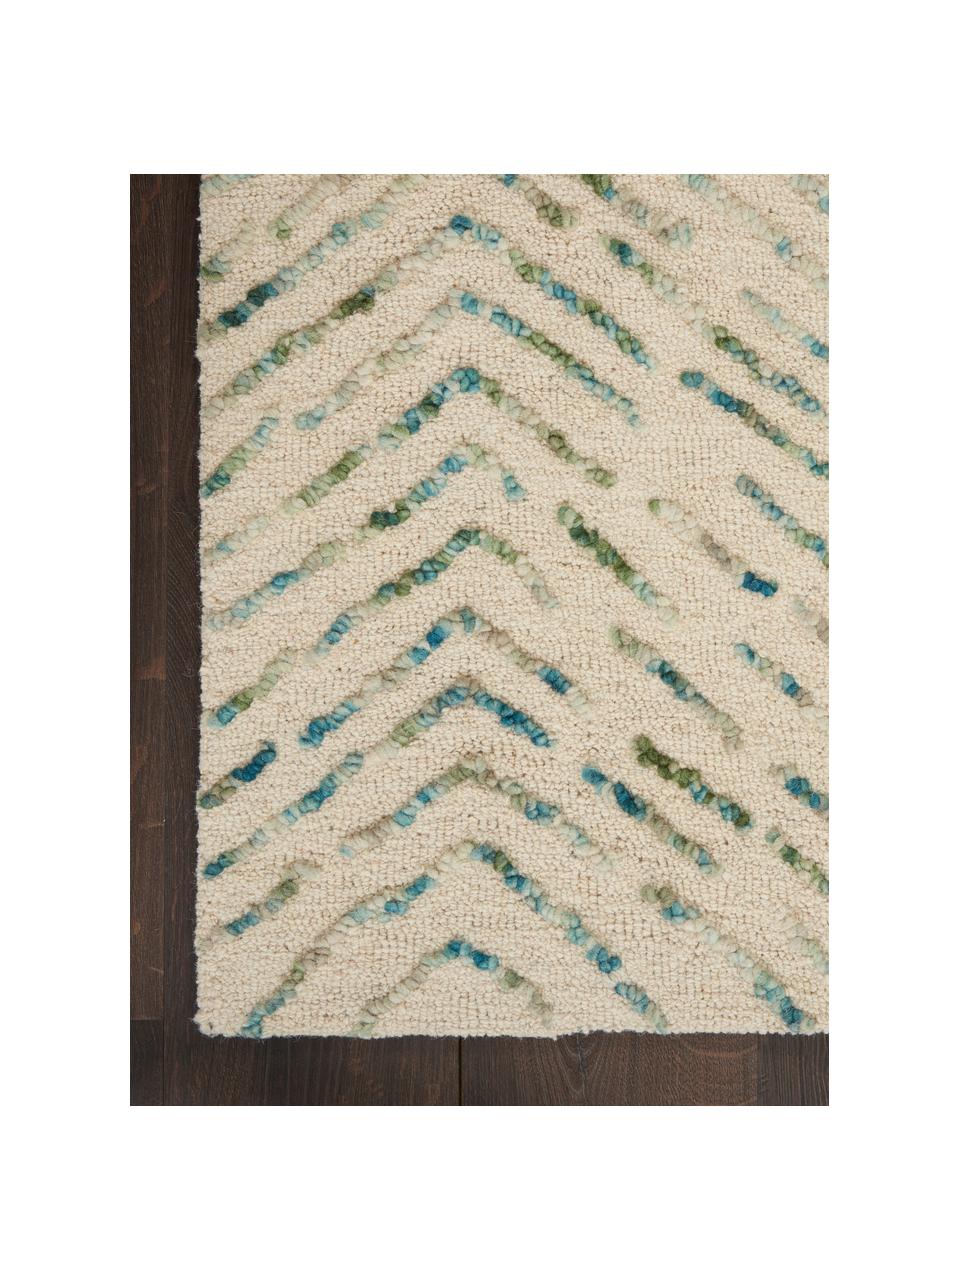 Ručne tkaný vlnený koberec s reliéfom Colorado, 100 % vlna
V prvých týždňoch používania môžu vlnené koberce uvoľňovať vlákna, tento jav zmizne po niekoľkých týždňoch používania, Krémovobiela, tóny zelenej, tóny modrej, Š 120 x D 180 cm (veľkosť S)